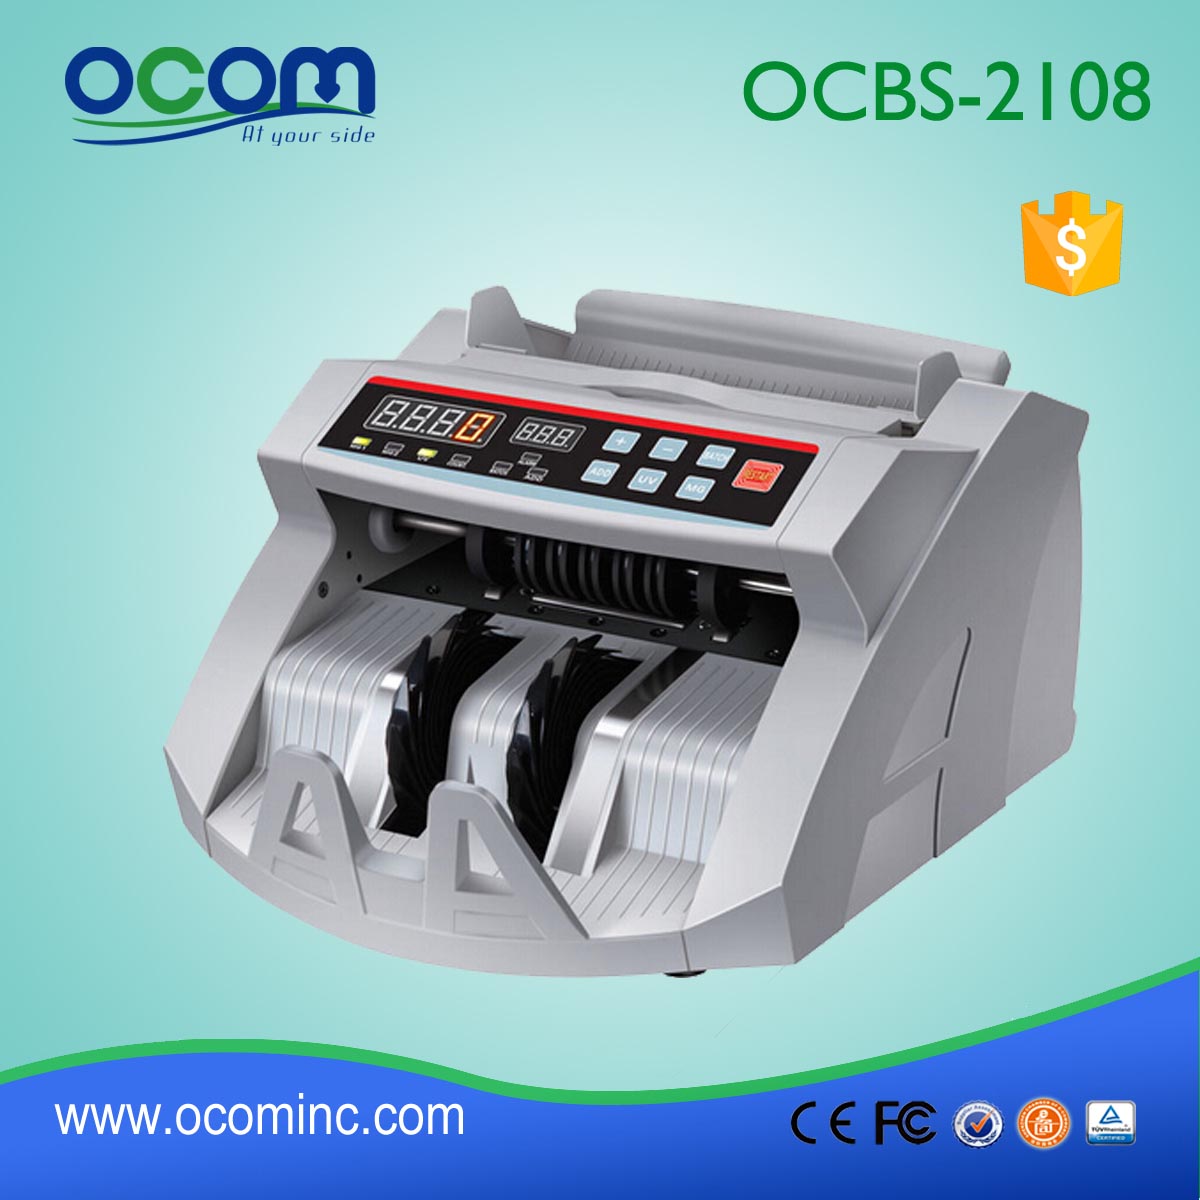 (OCBC-2108) - OCOM fait 2016 le plus récent compteur automatique de factures